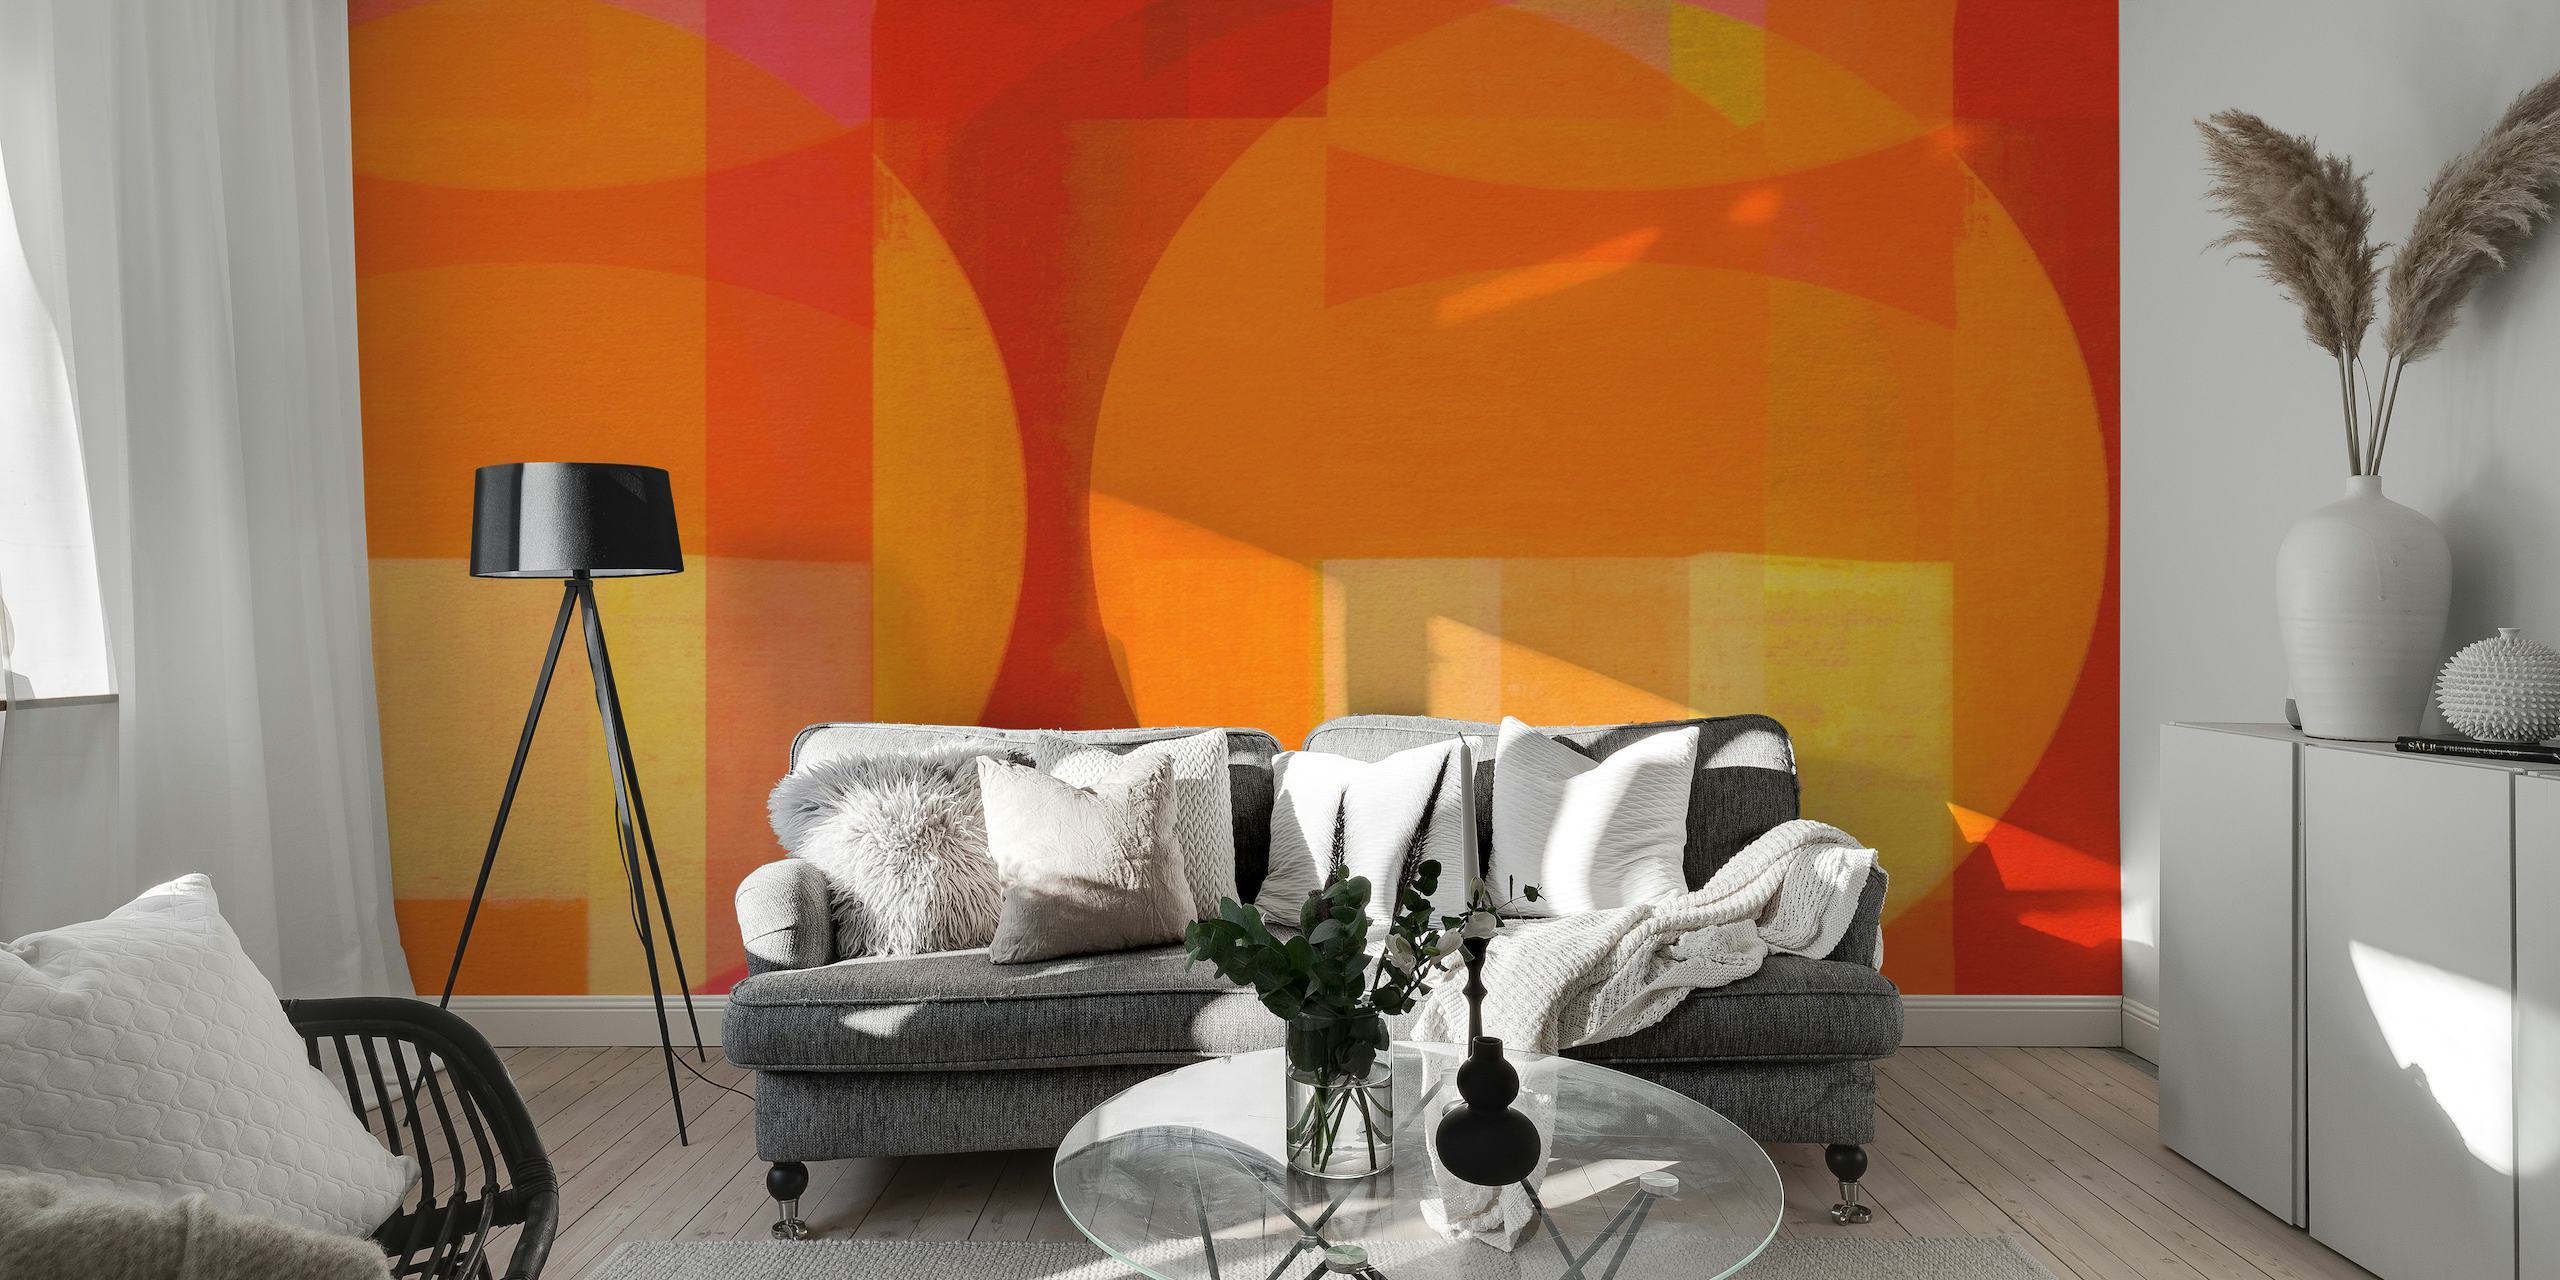 Abstraktes Wandgemälde im Bauhaus-Stil in einer lebendigen Mischung aus roten, orangen und gelben geometrischen Formen.